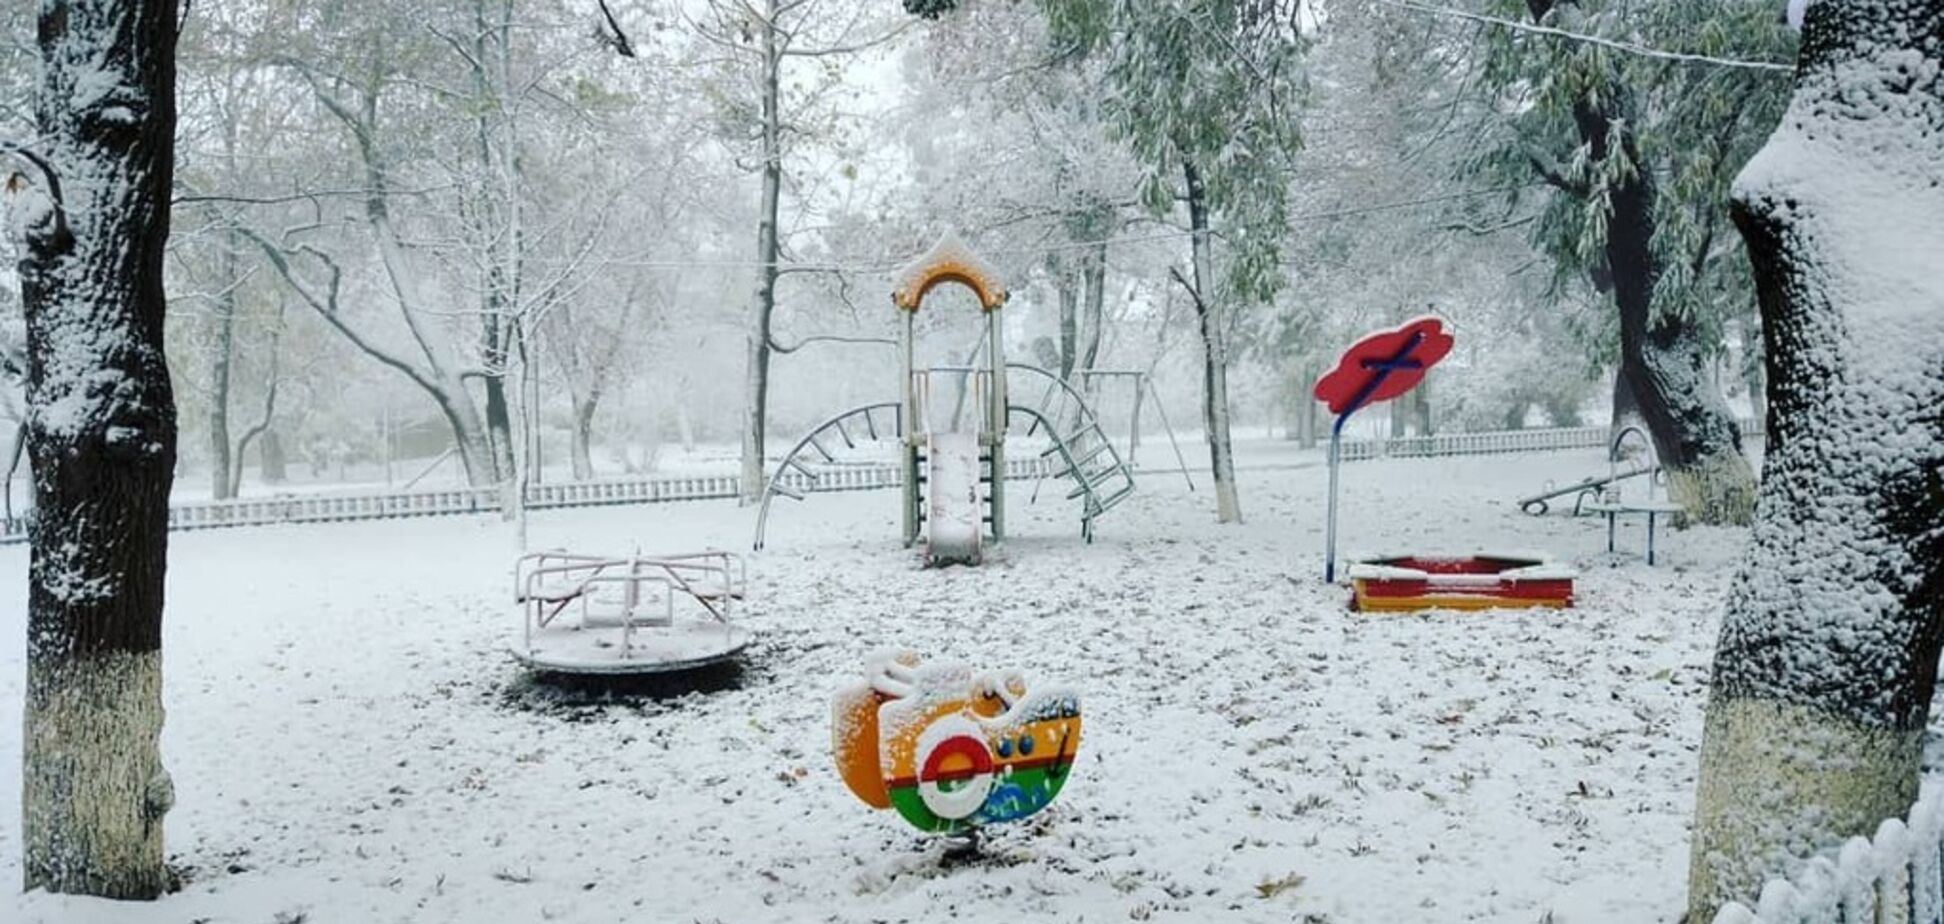 Сотни аварий: в Украине случился армагеддон из-за первого снега. Фото и видео